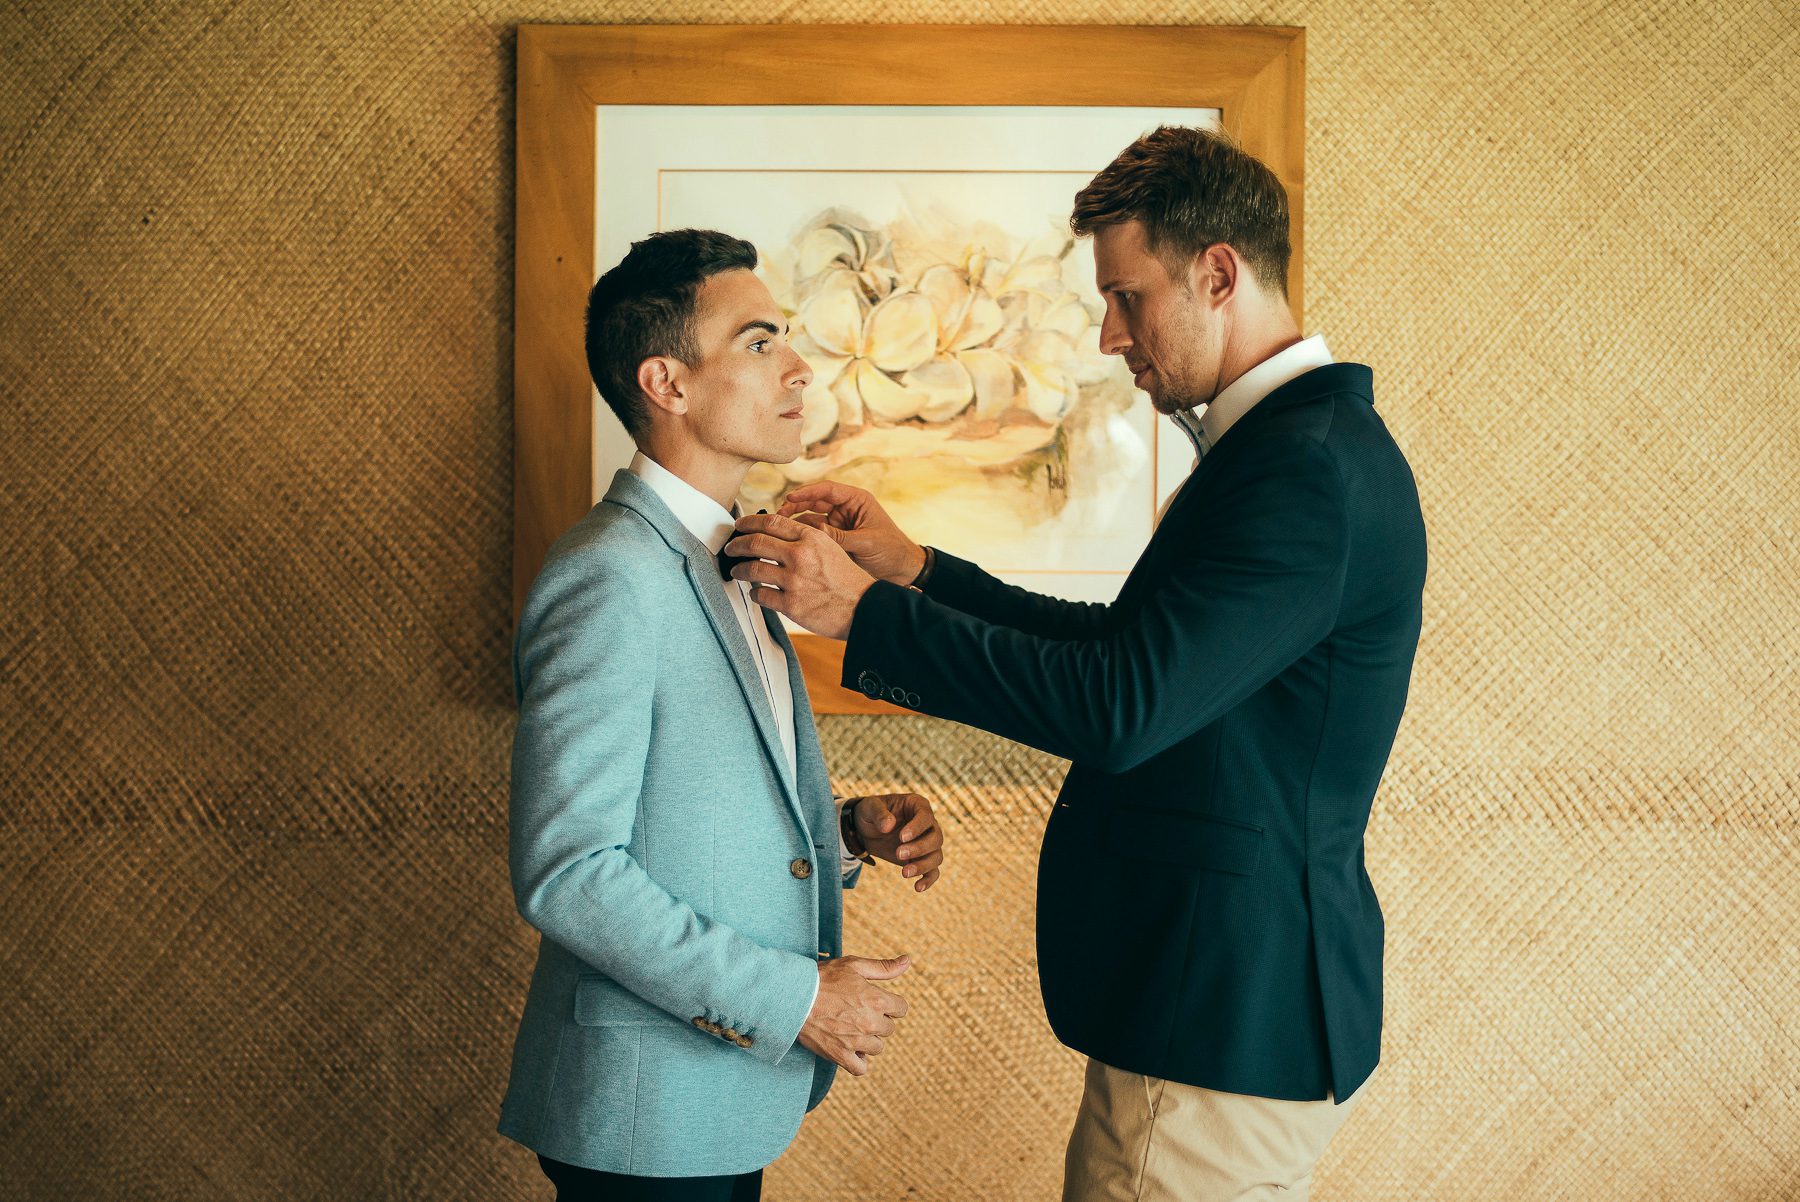 GAY WEDDING IN TAHAA